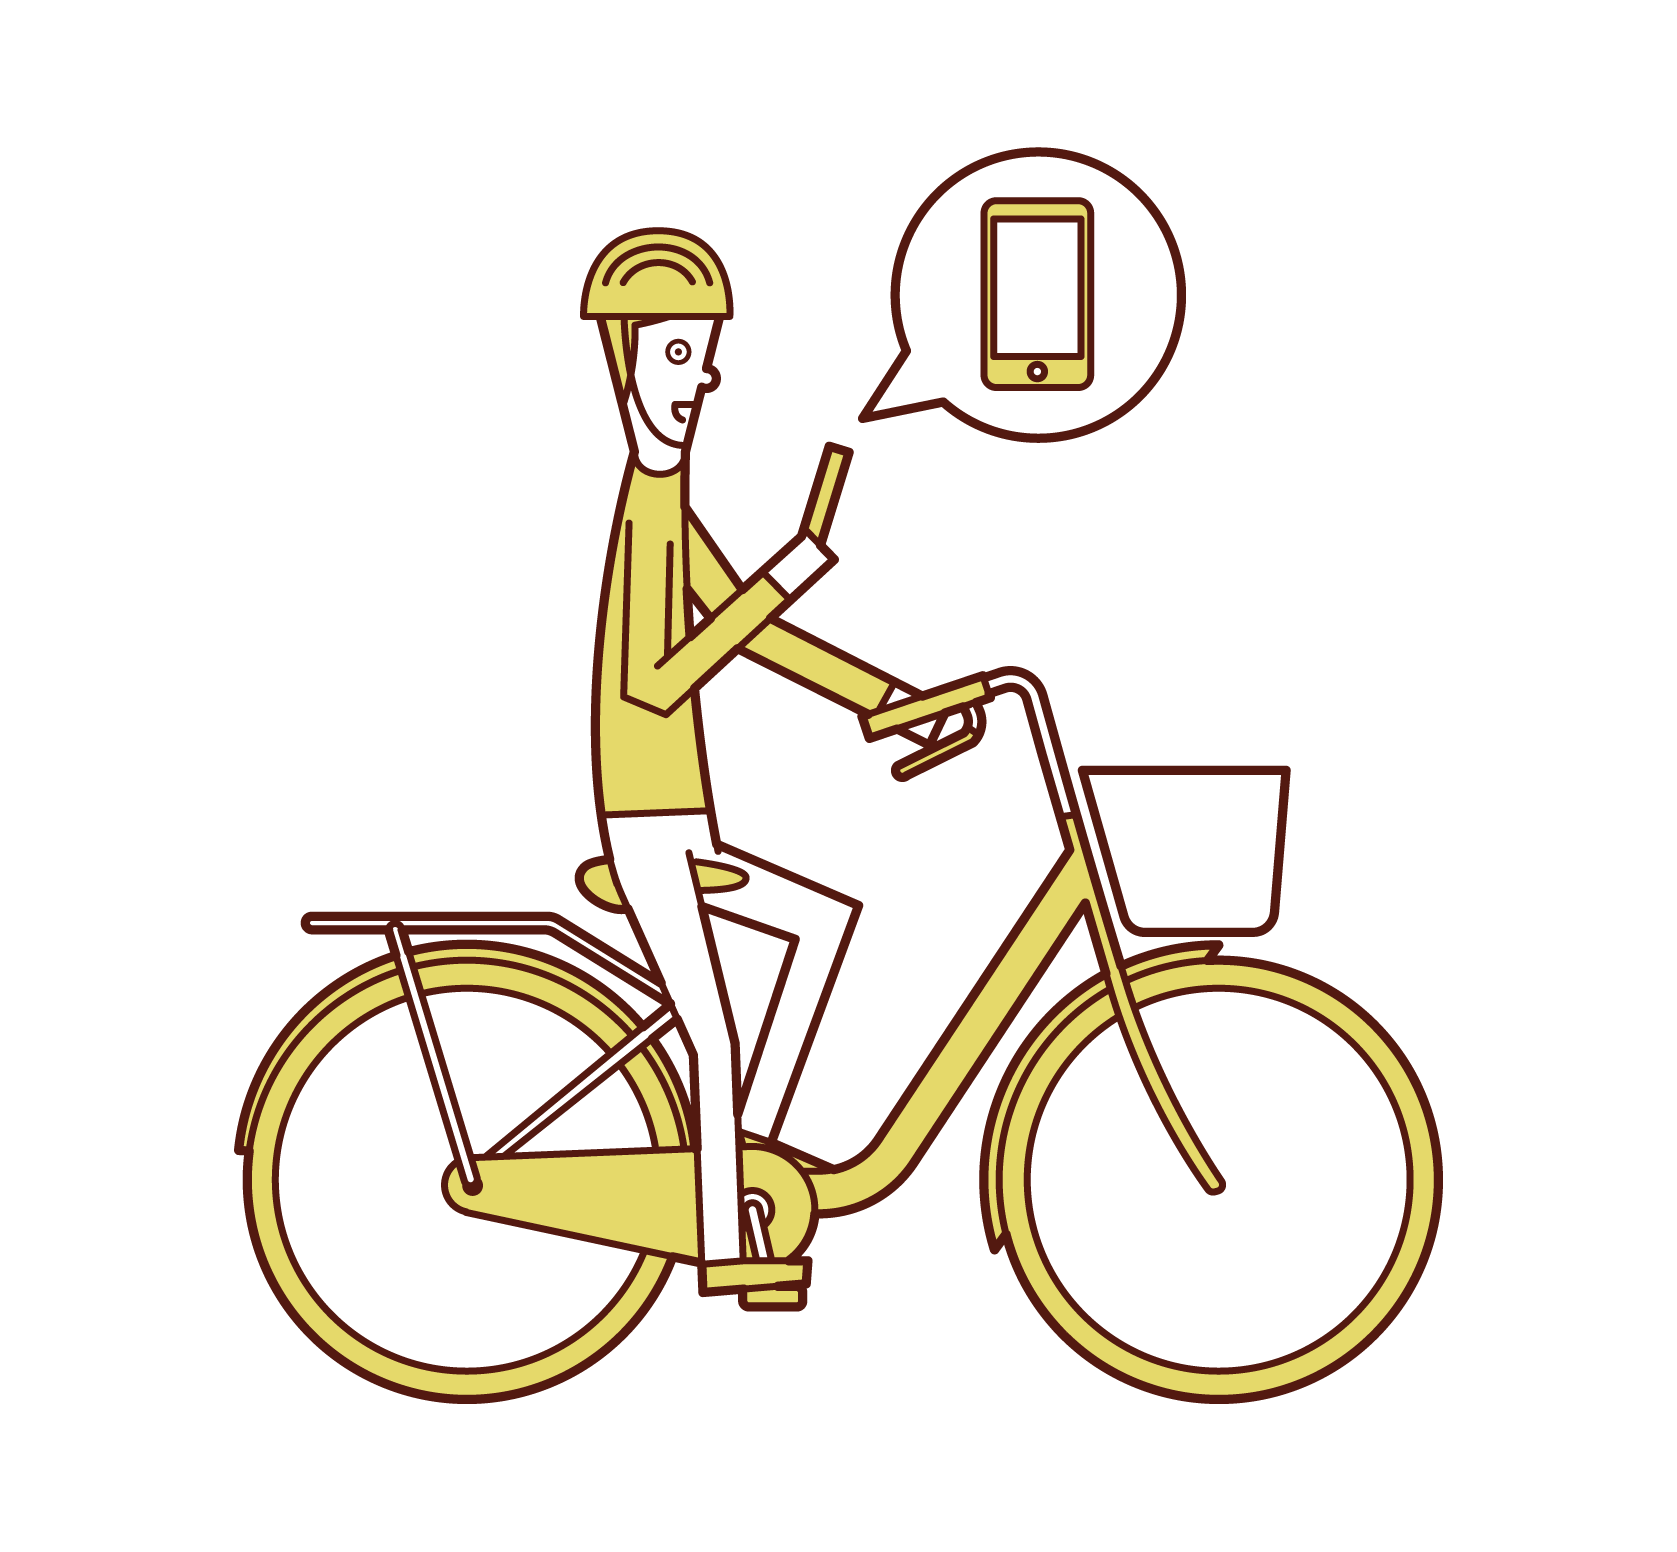 騎自行車的人(男性)在操作智慧手機時的插圖